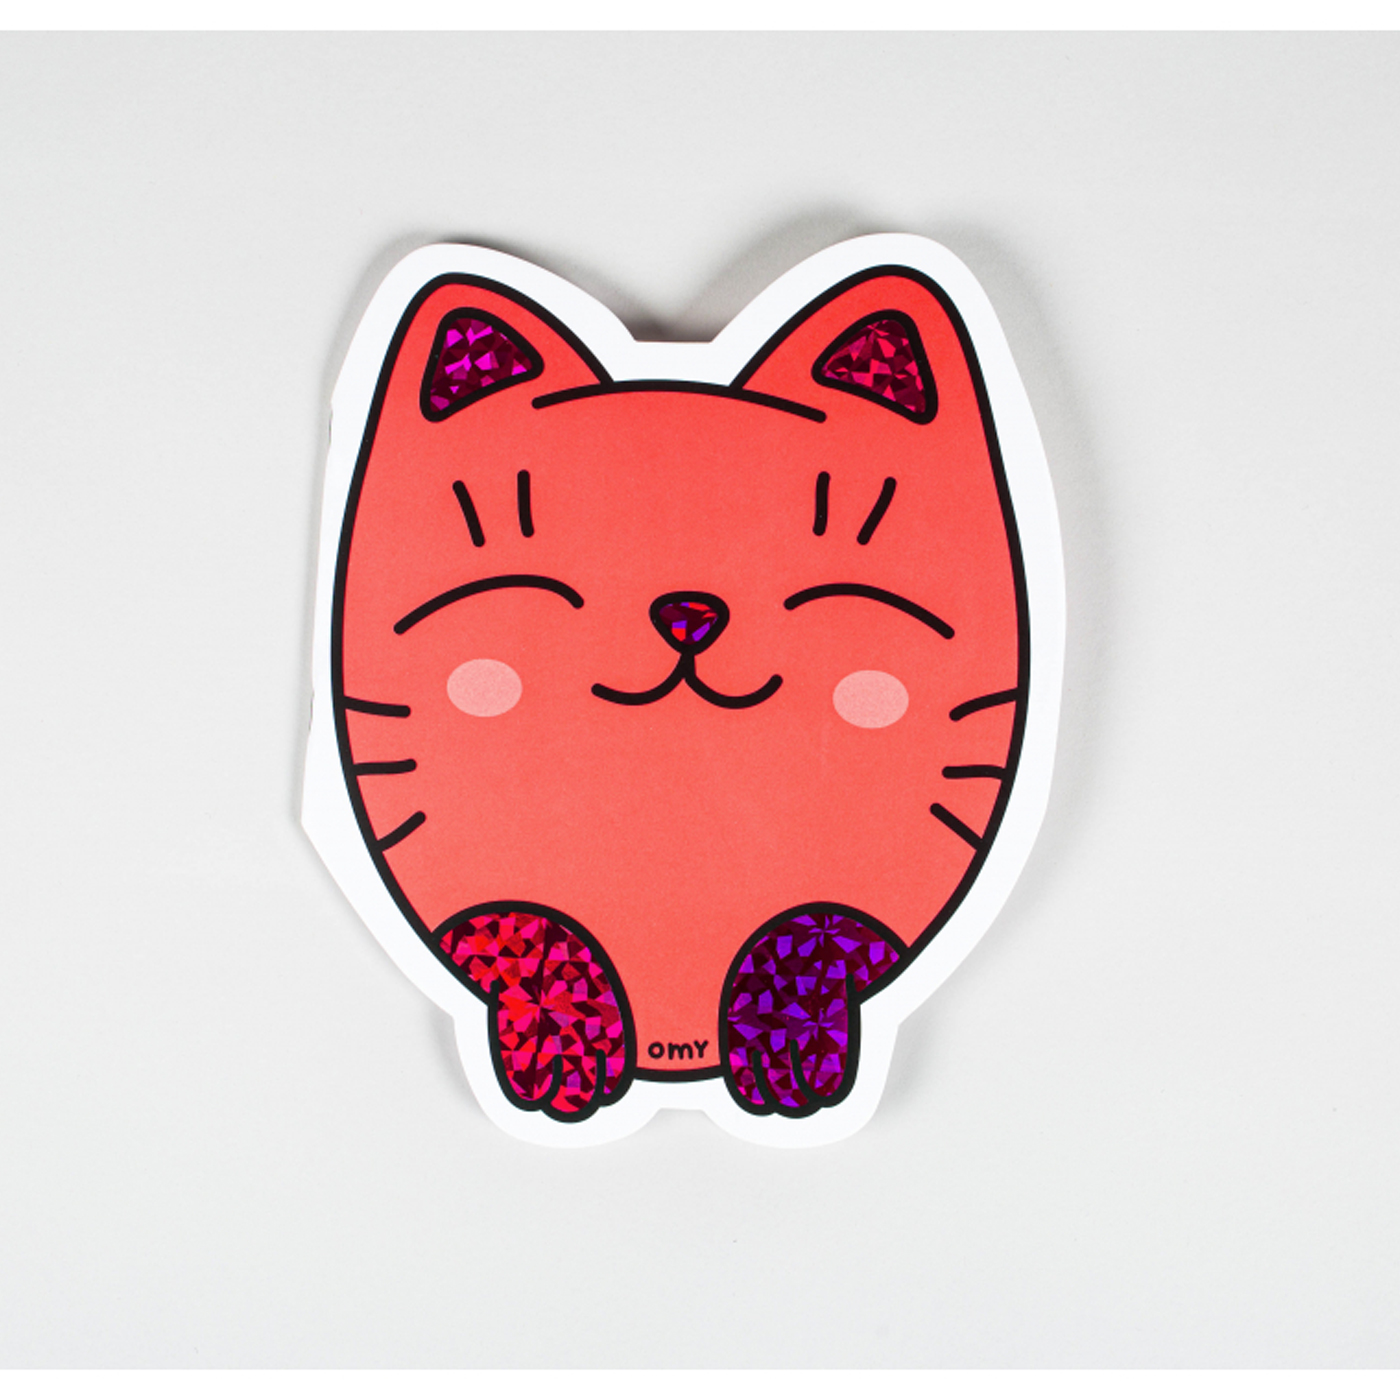  Omy Sticker Shape Notebooks - Kitty